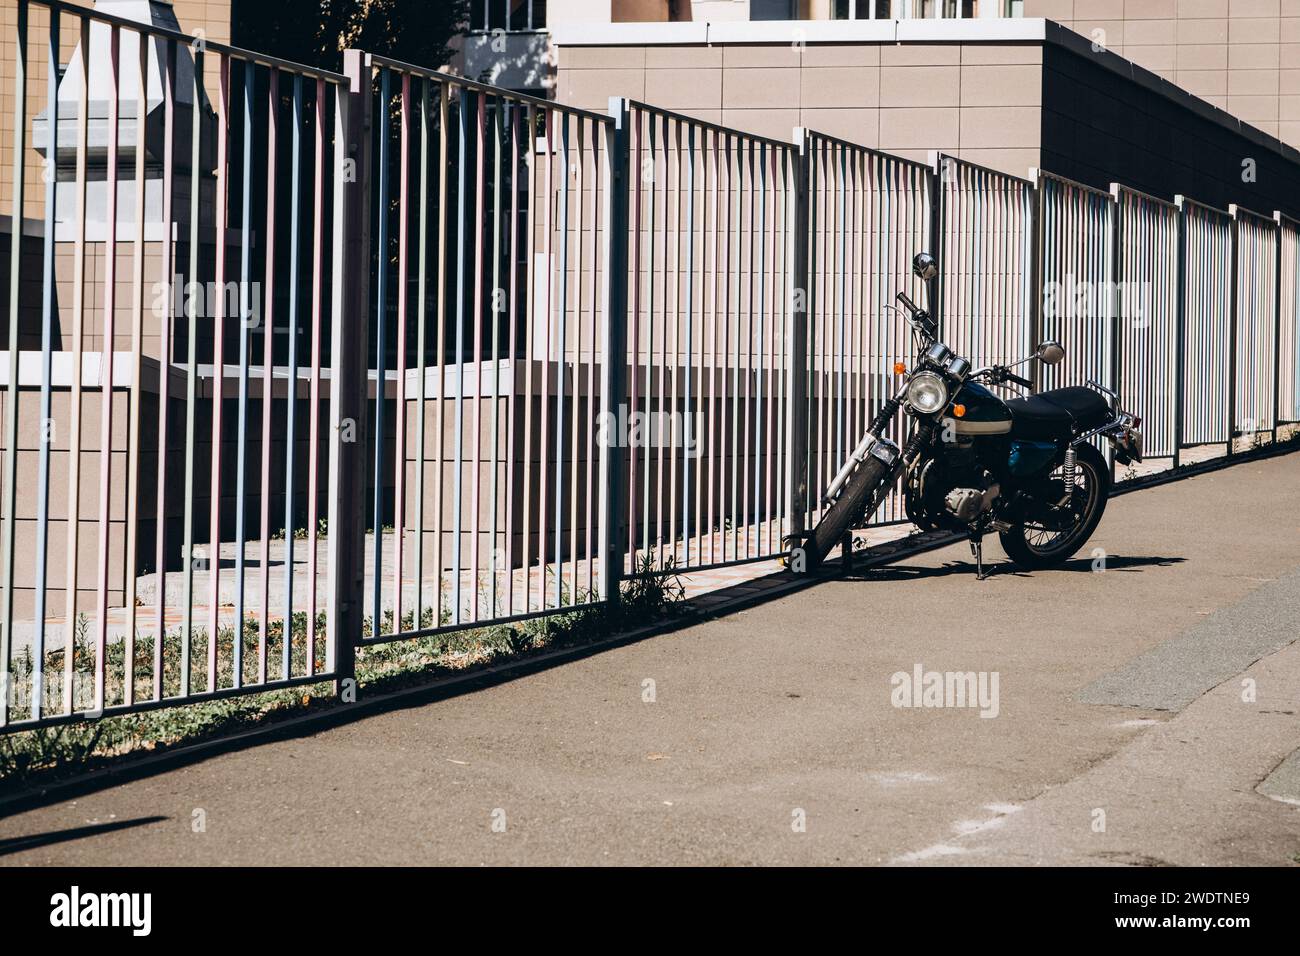 motocicletta vicino a una lunga recinzione. Foto di alta qualità Foto Stock